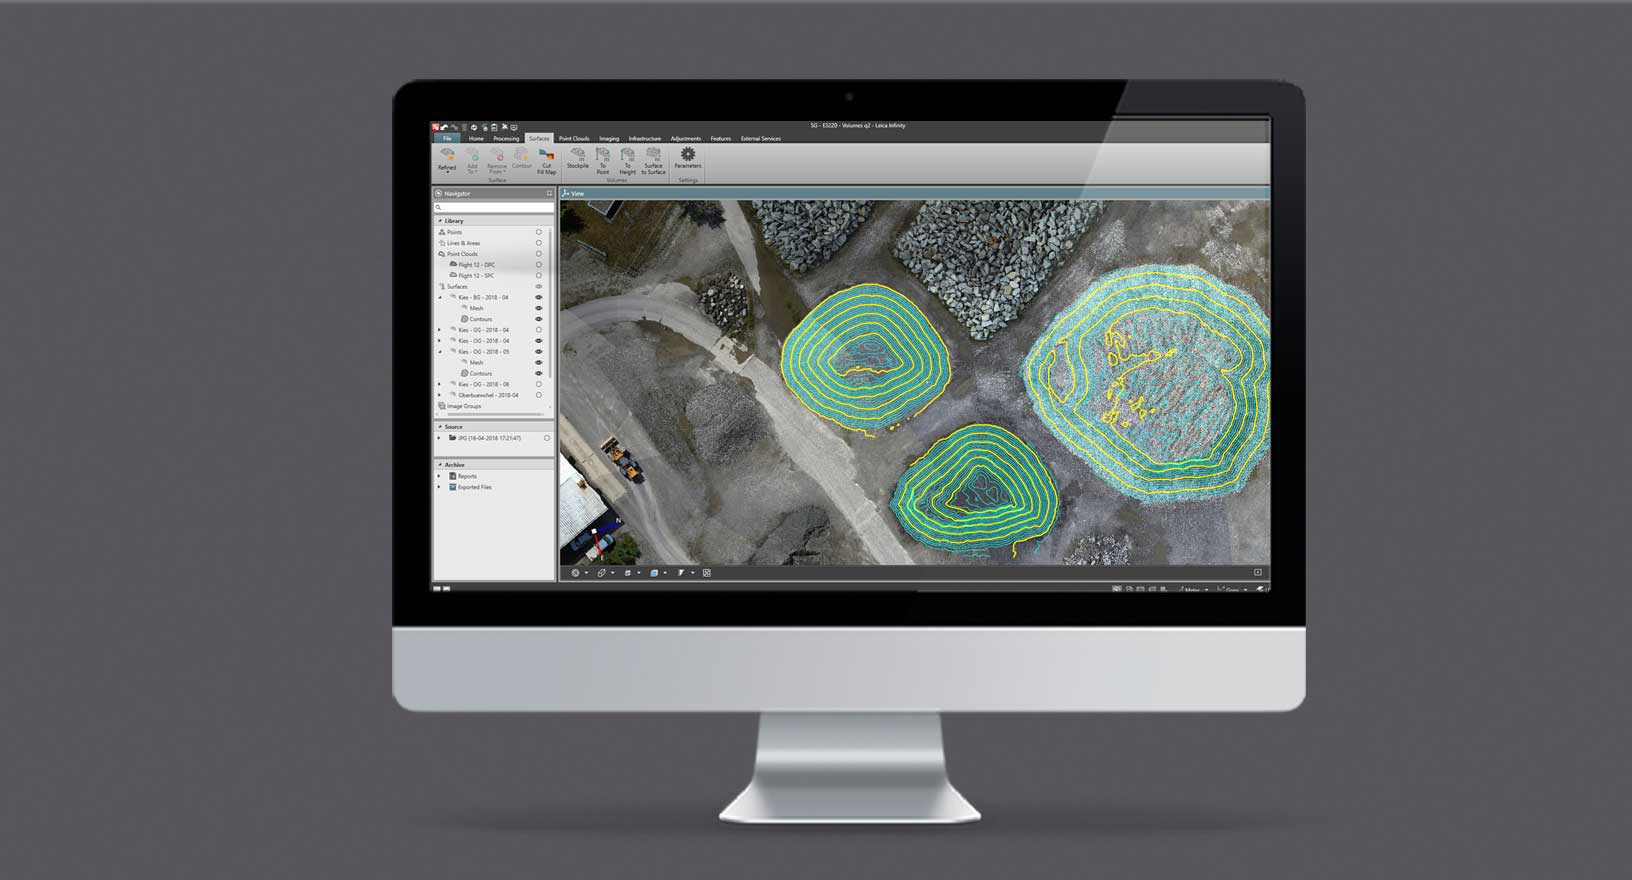 Leica Infinityソフトウェアで測定された岩石のストックパイルの航空画像